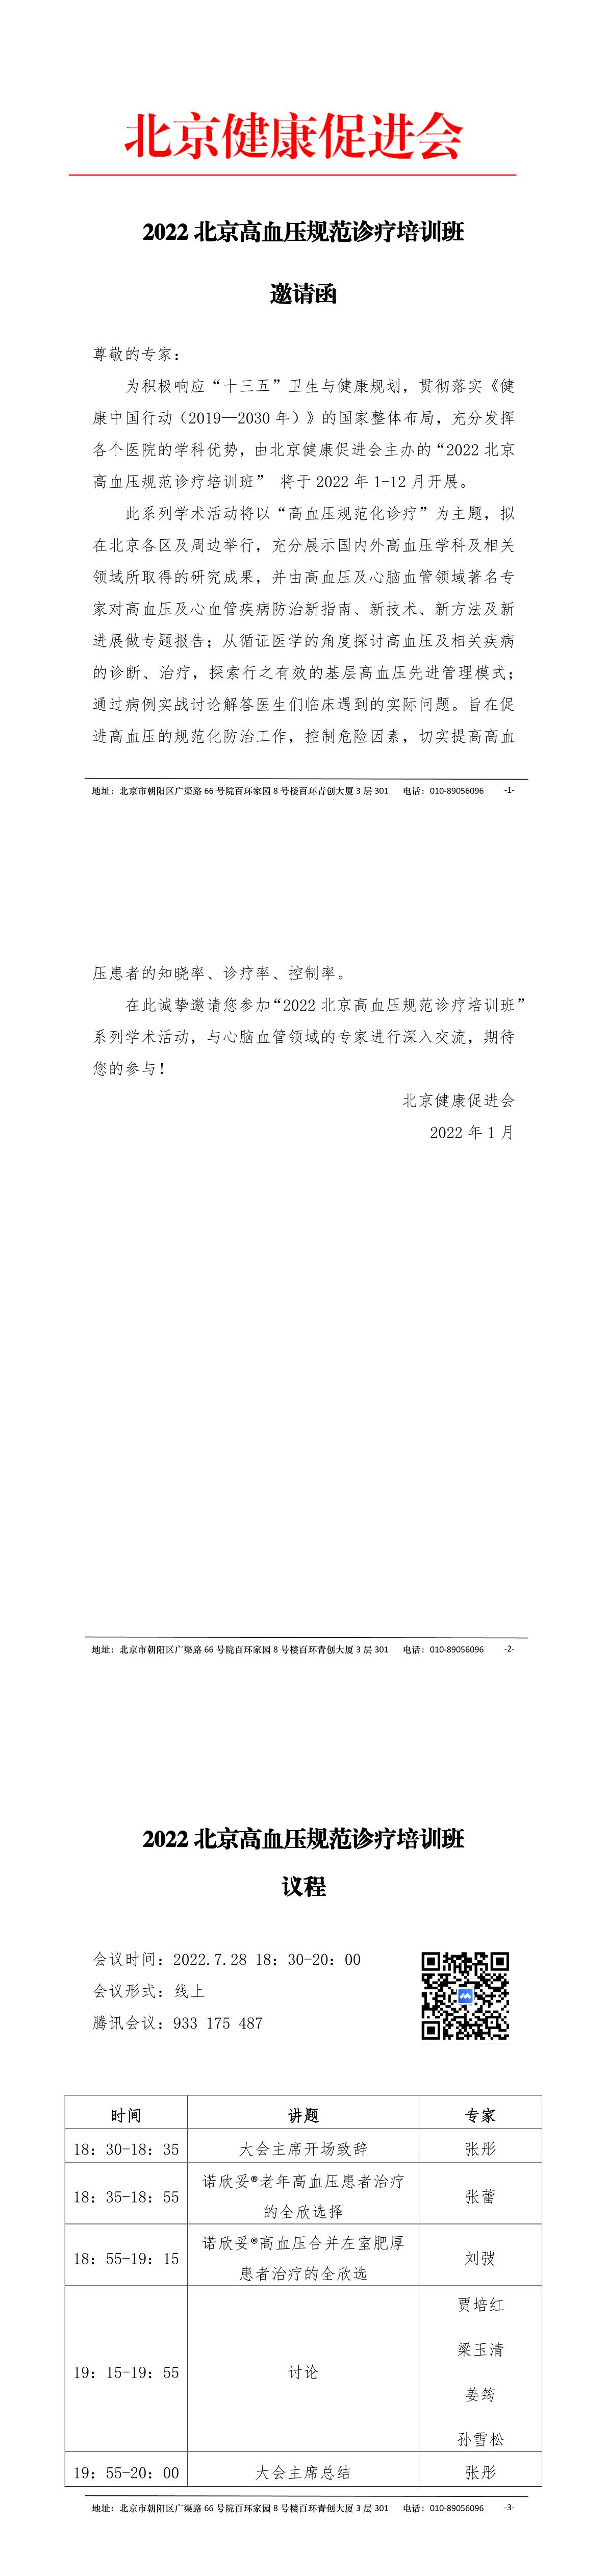 2022北京高血压规范诊疗培训班邀请函（7.28）-1.jpg